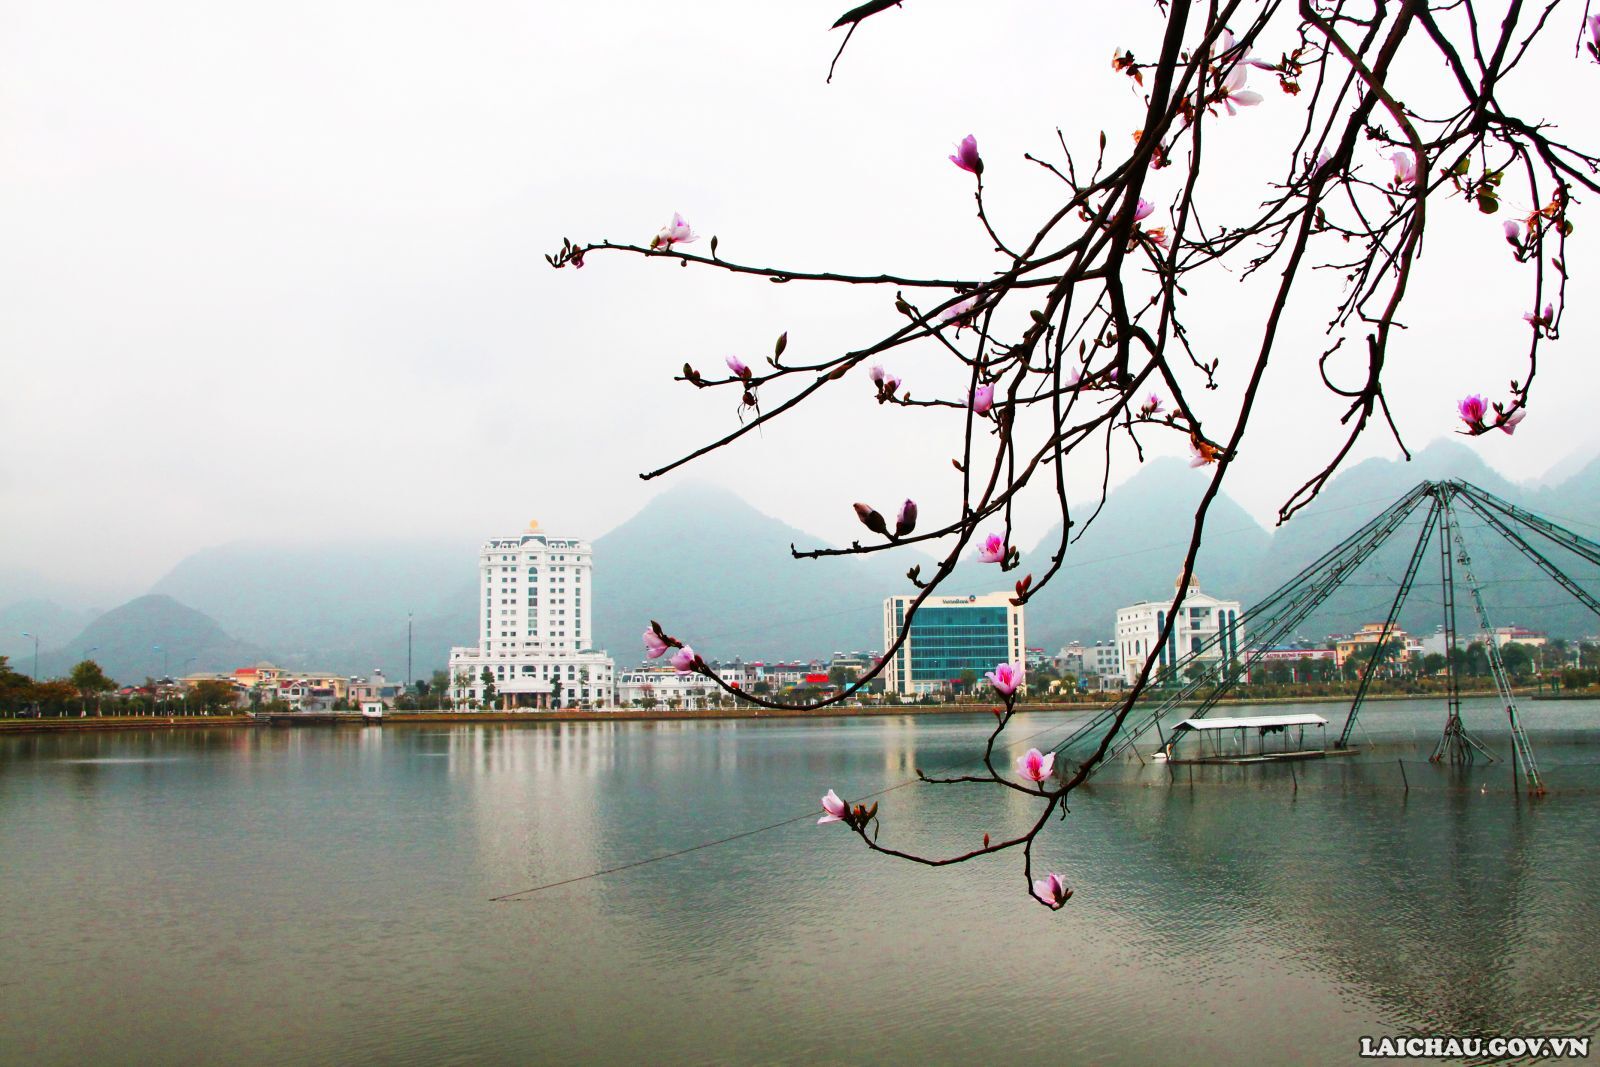 Còn chần chừ gì nữa mà không xách ba lô lên và đi đến Lai Châu để có những bức ảnh đẹp nhất với hoa ban.